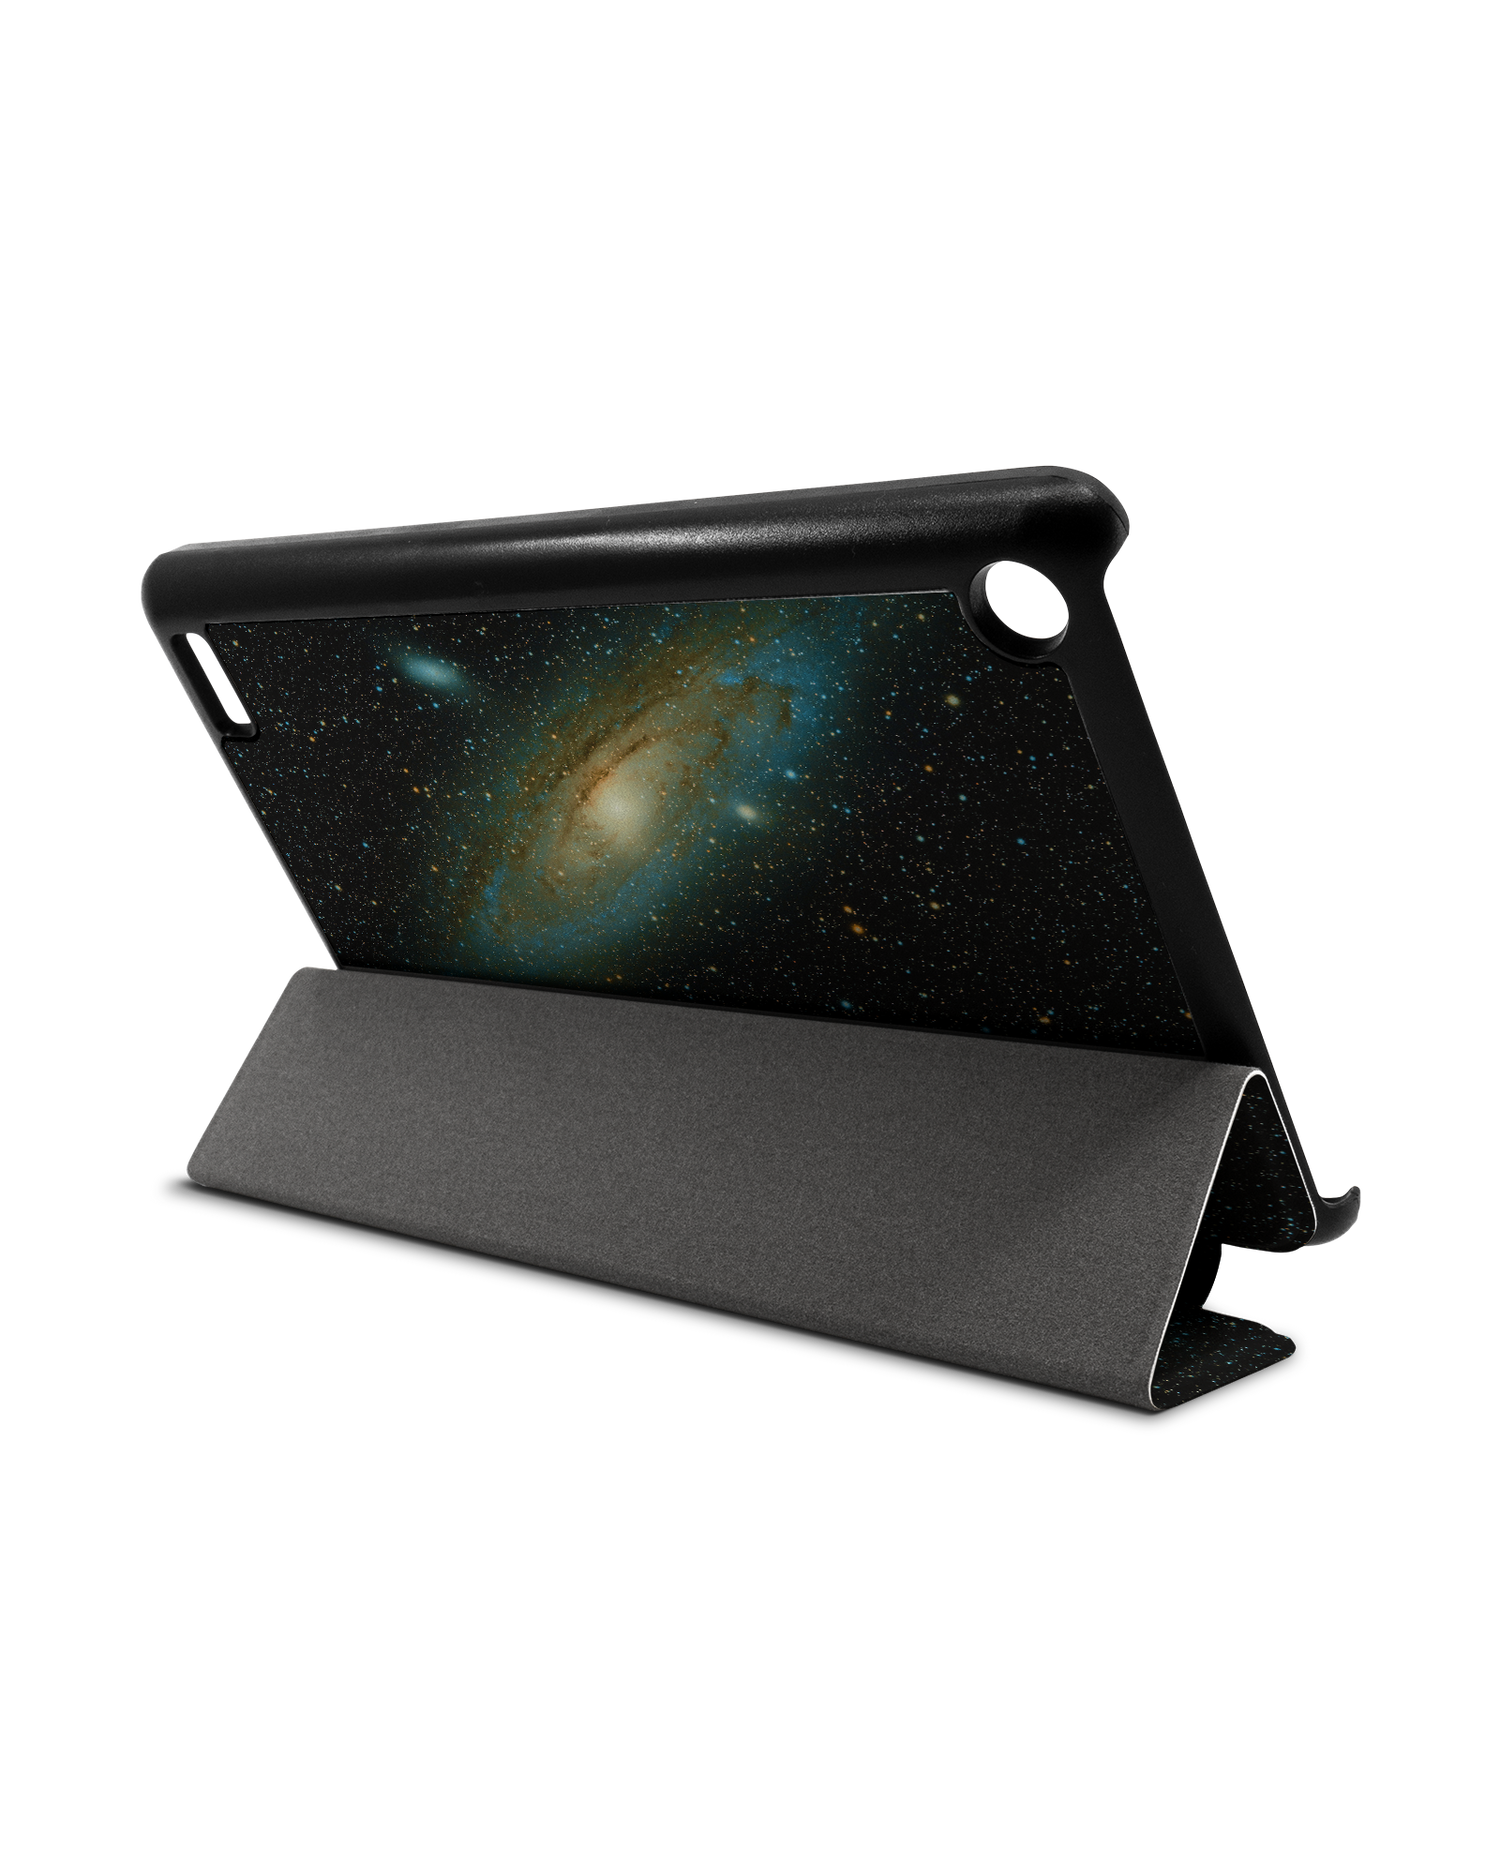 Outer Space Tablet Smart Case für Amazon Fire 7: Aufgestellt im Querformat